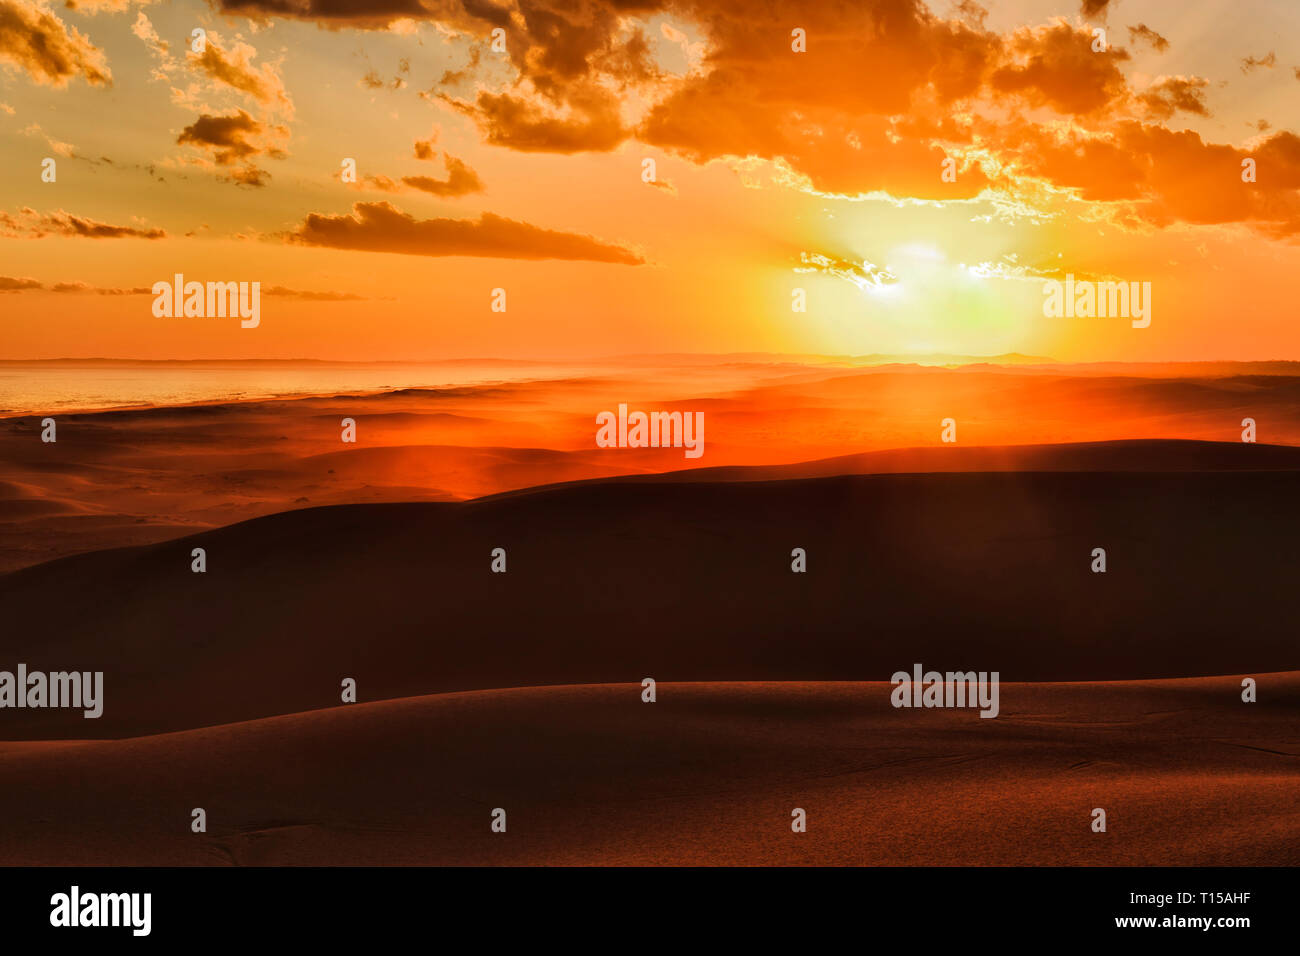 Le soleil se couche sur l'horizon derrière les dunes de sable déserte longue de Stockton Beach sur la côte pacifique de l'Australie - l'orange vif soleil hues sands et s Banque D'Images